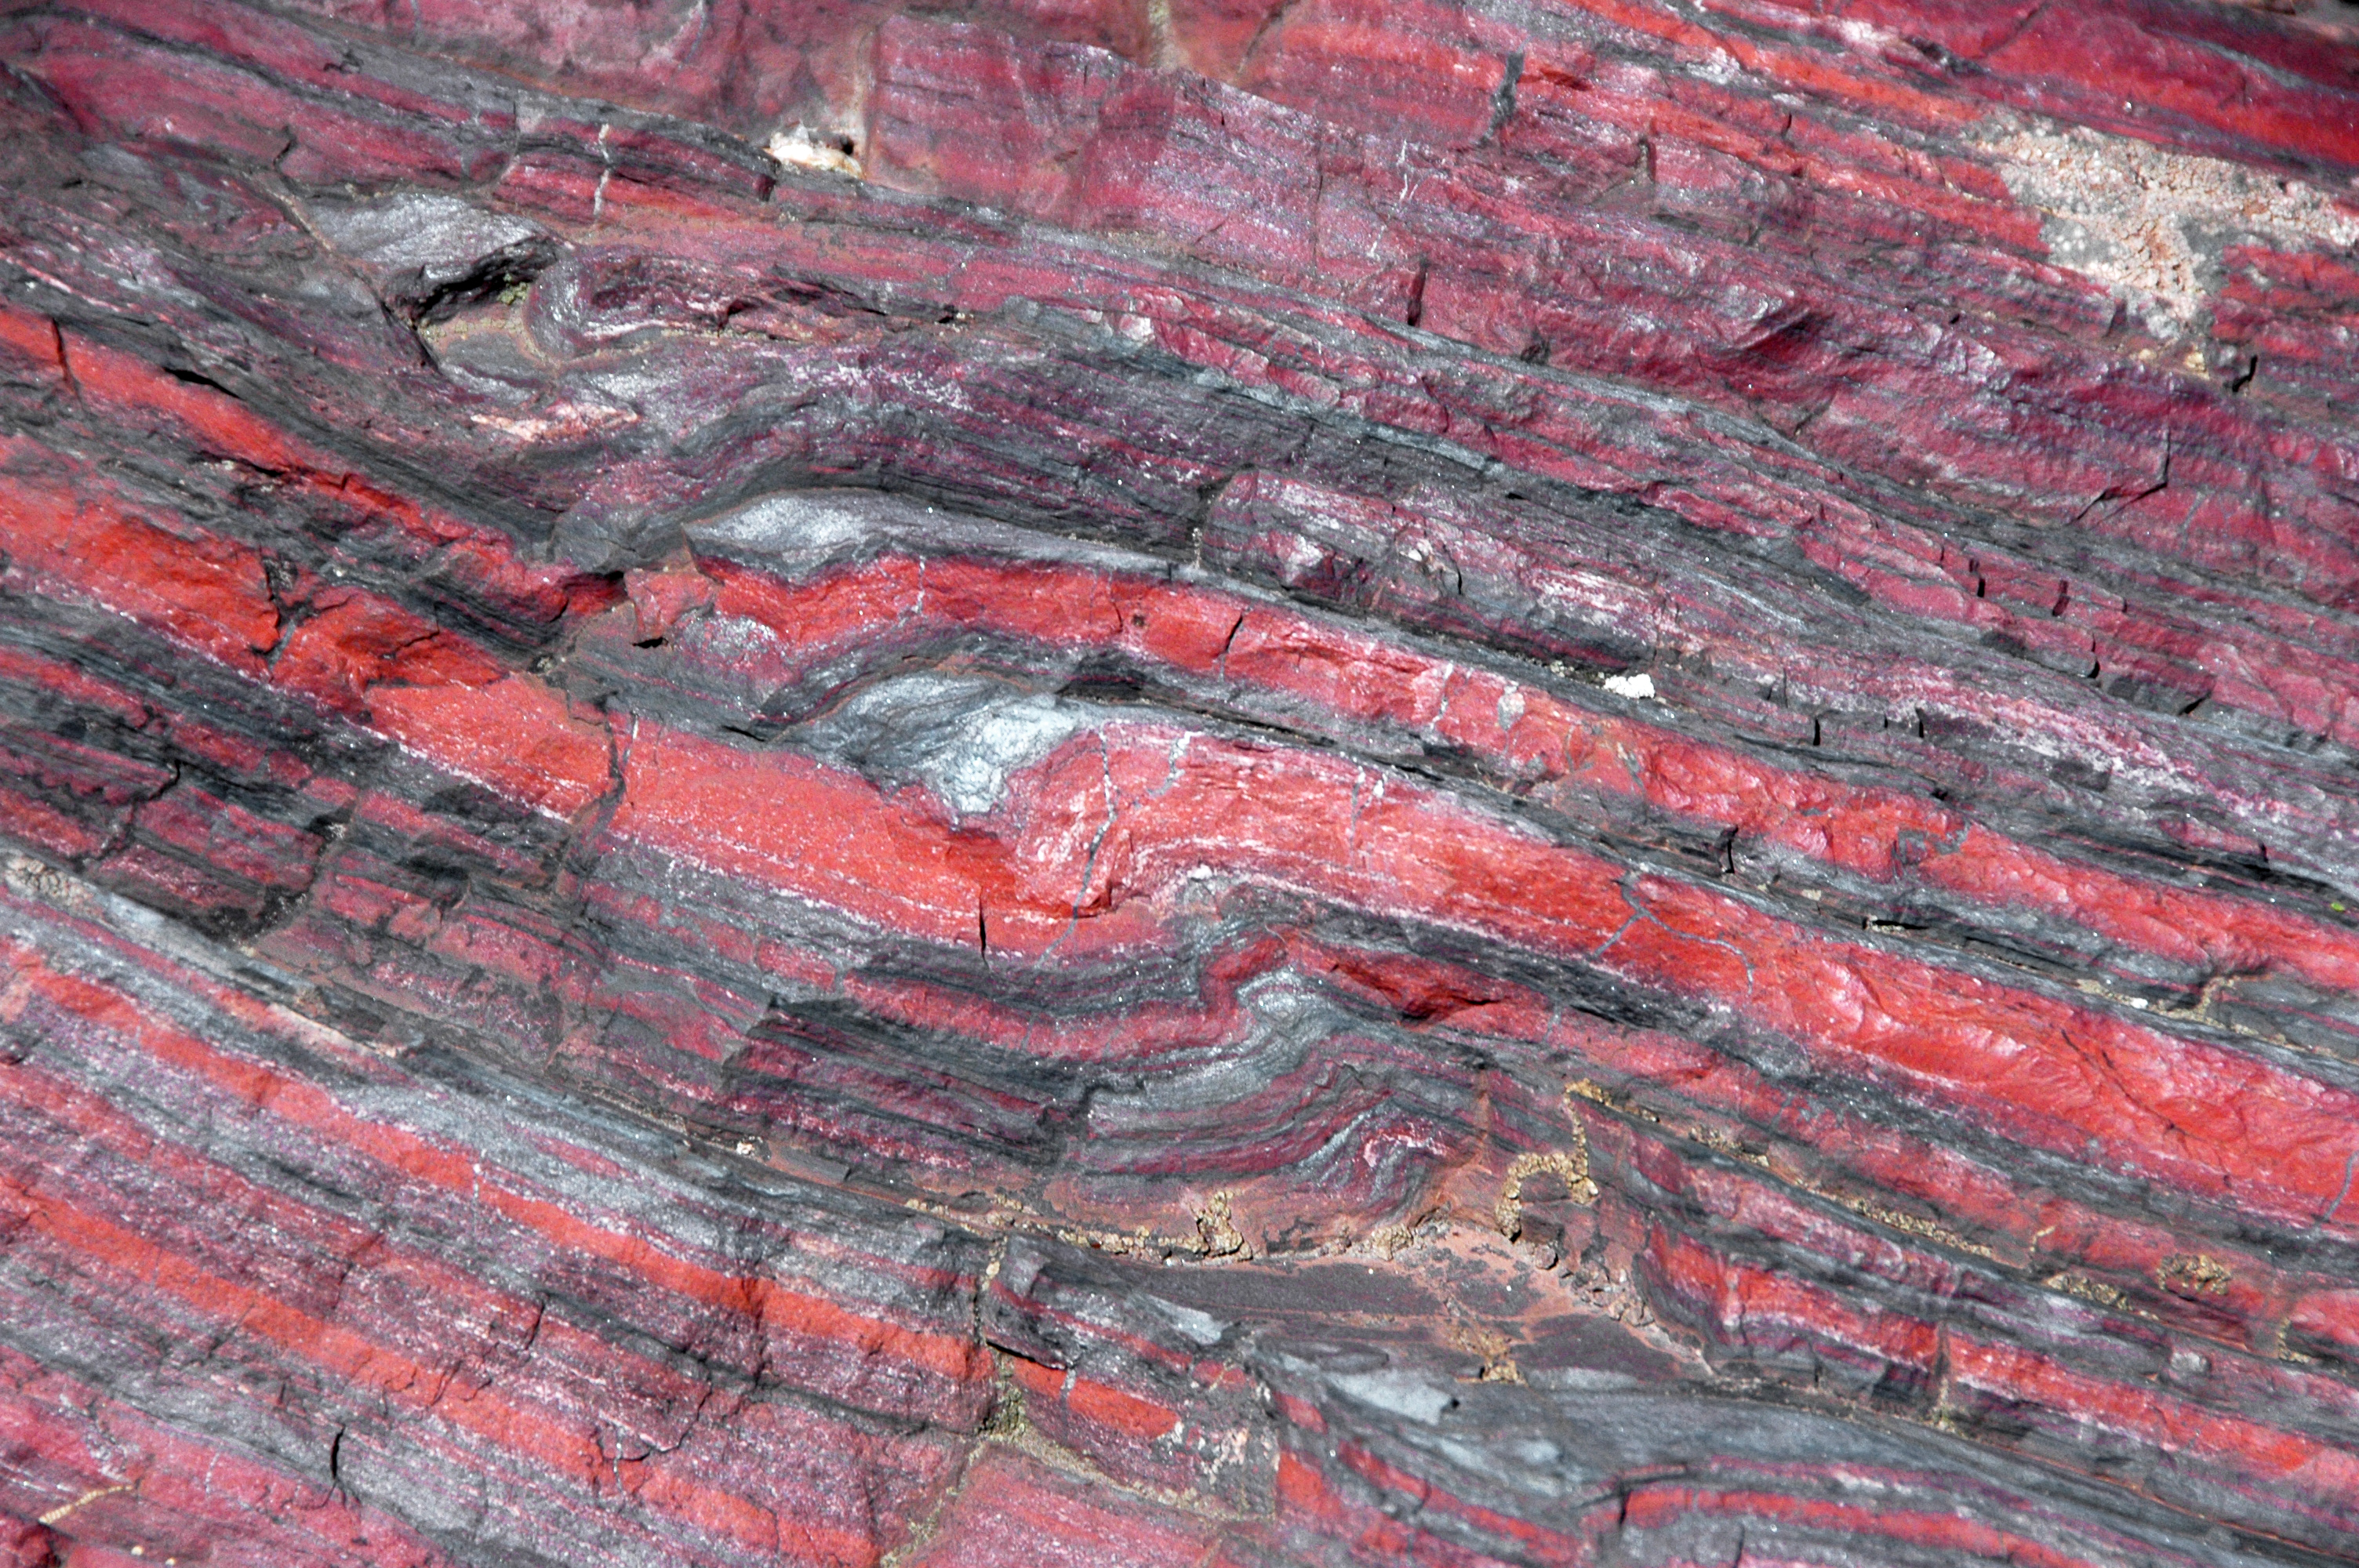 Esempio di Banded Iron Formation. Le lamine scure sono ossidi di ferro, principalmente ematite, mentre le lamine rosse sono minerali silicei, come il diaspro, contenenti ferro in varie concentrazioni.